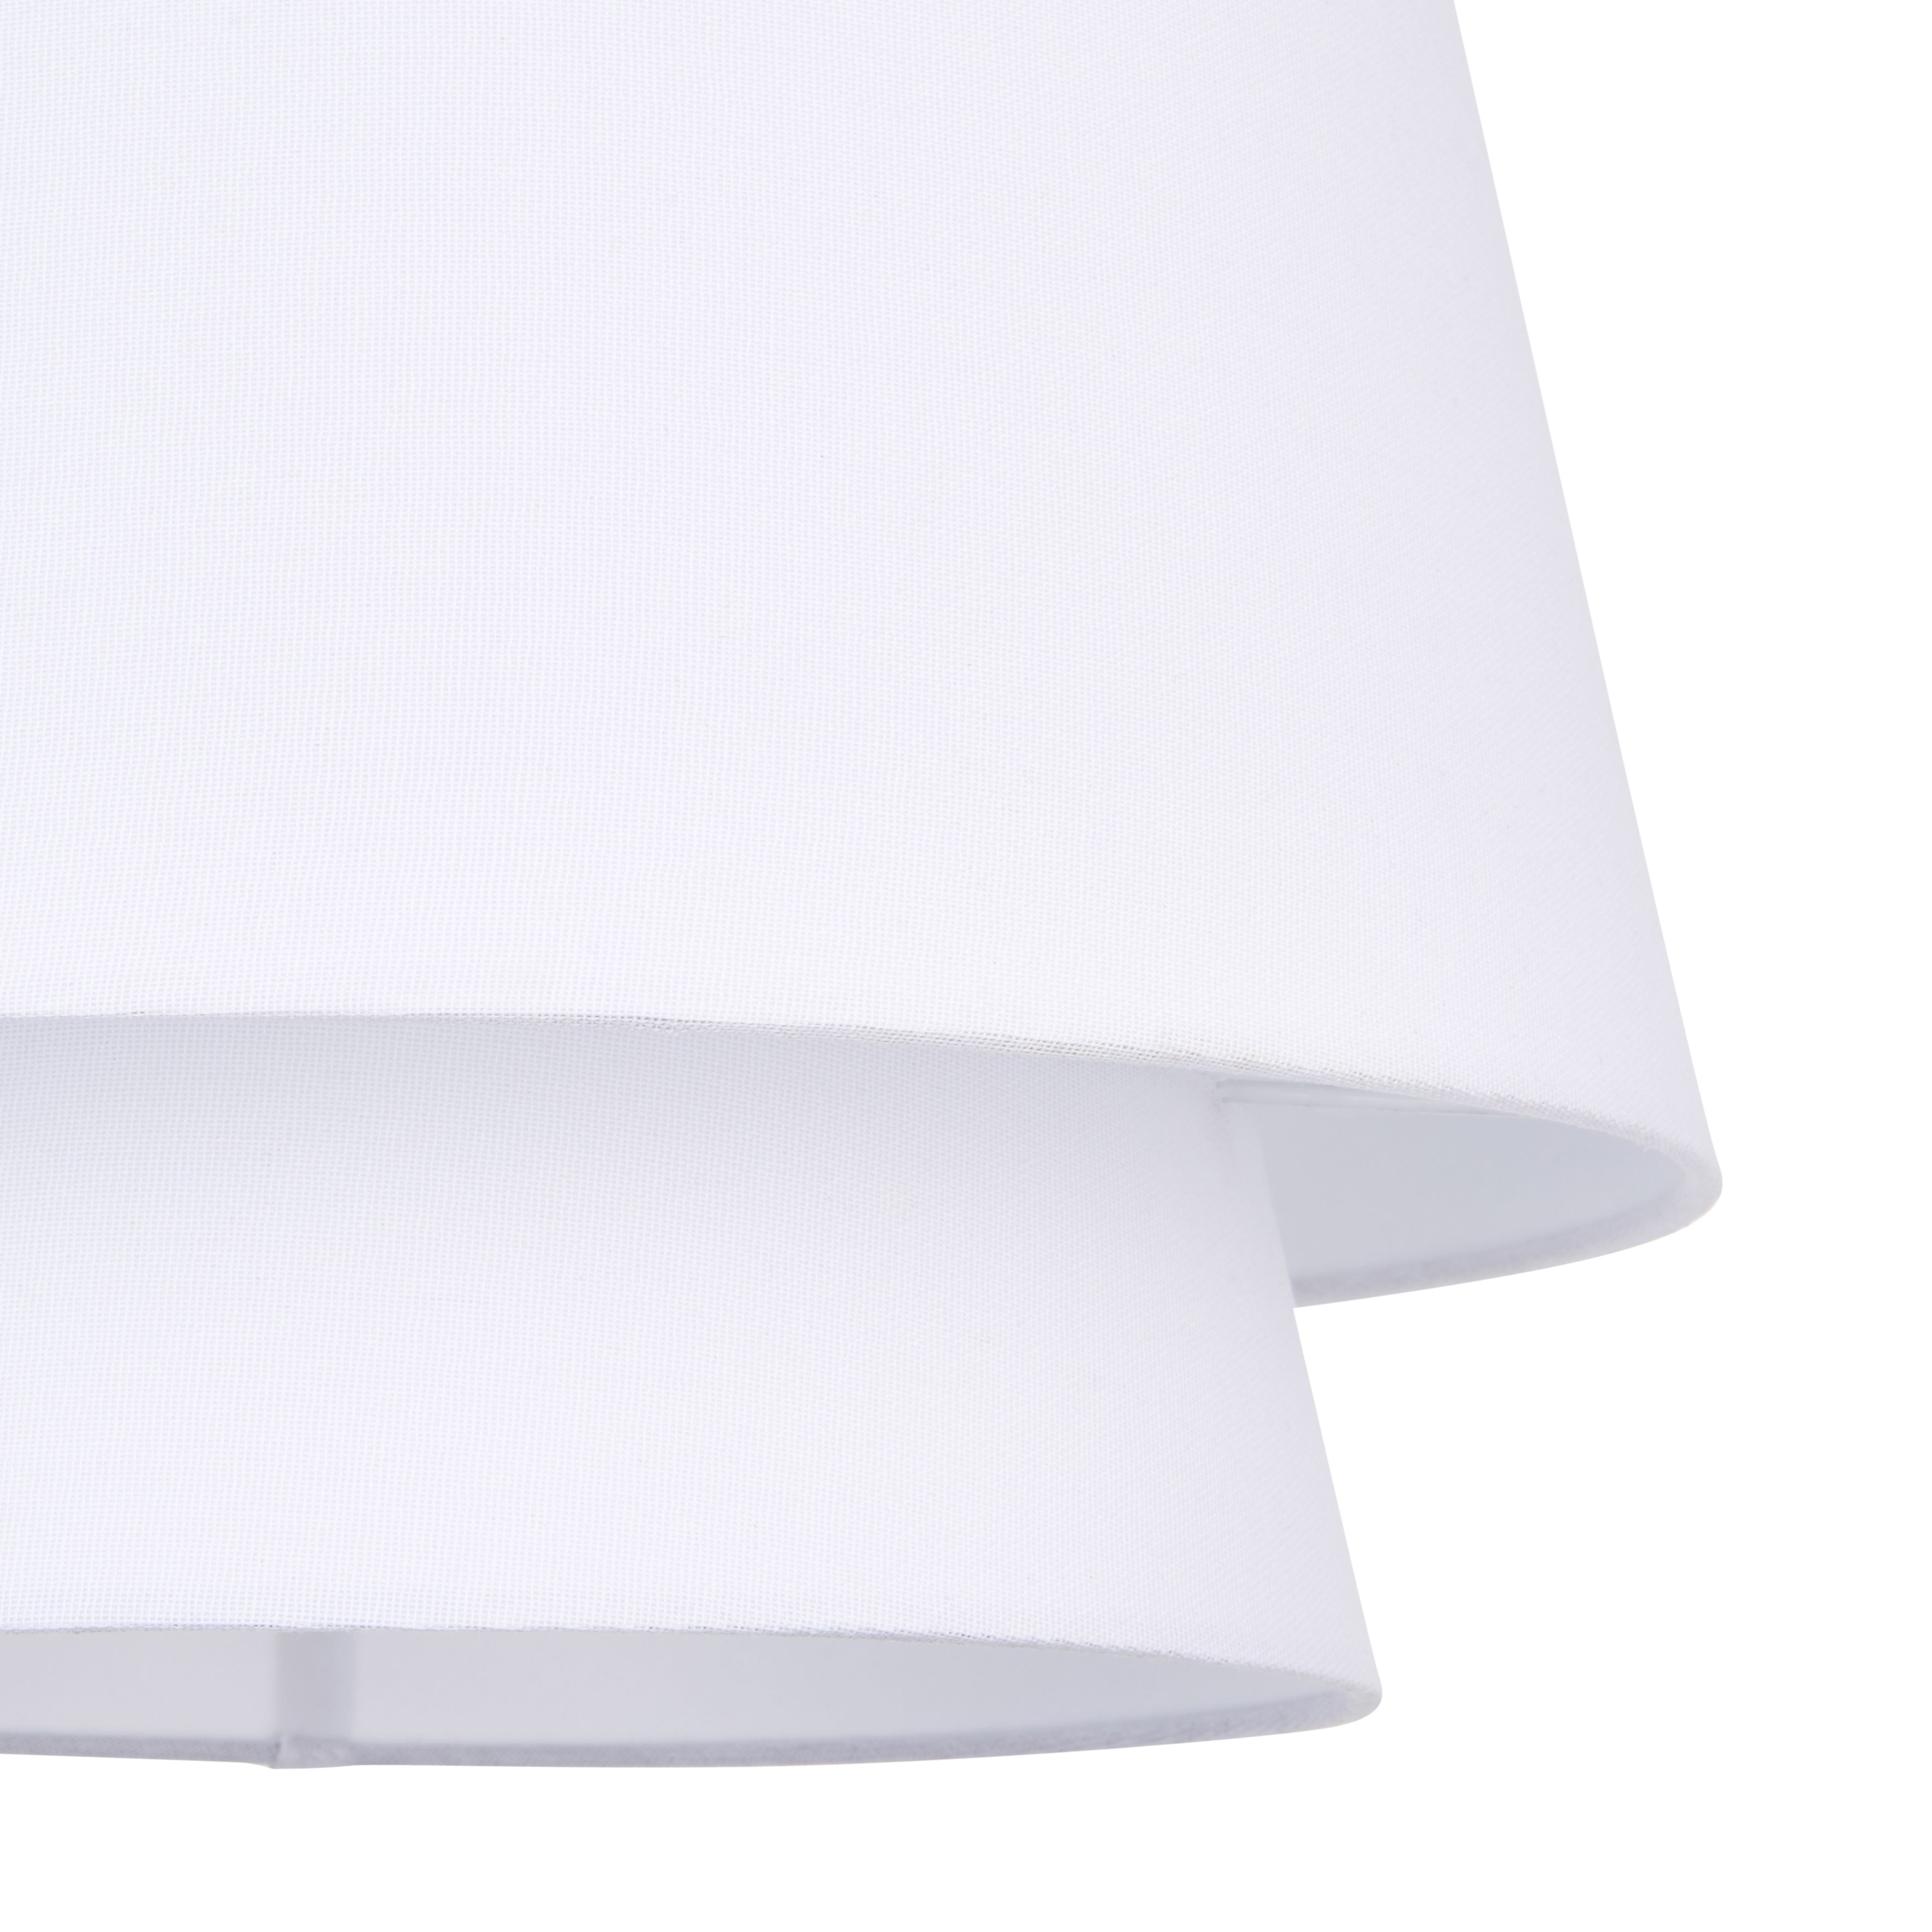 Ambra pendant White LED Pendant ceiling light, (Dia)350mm